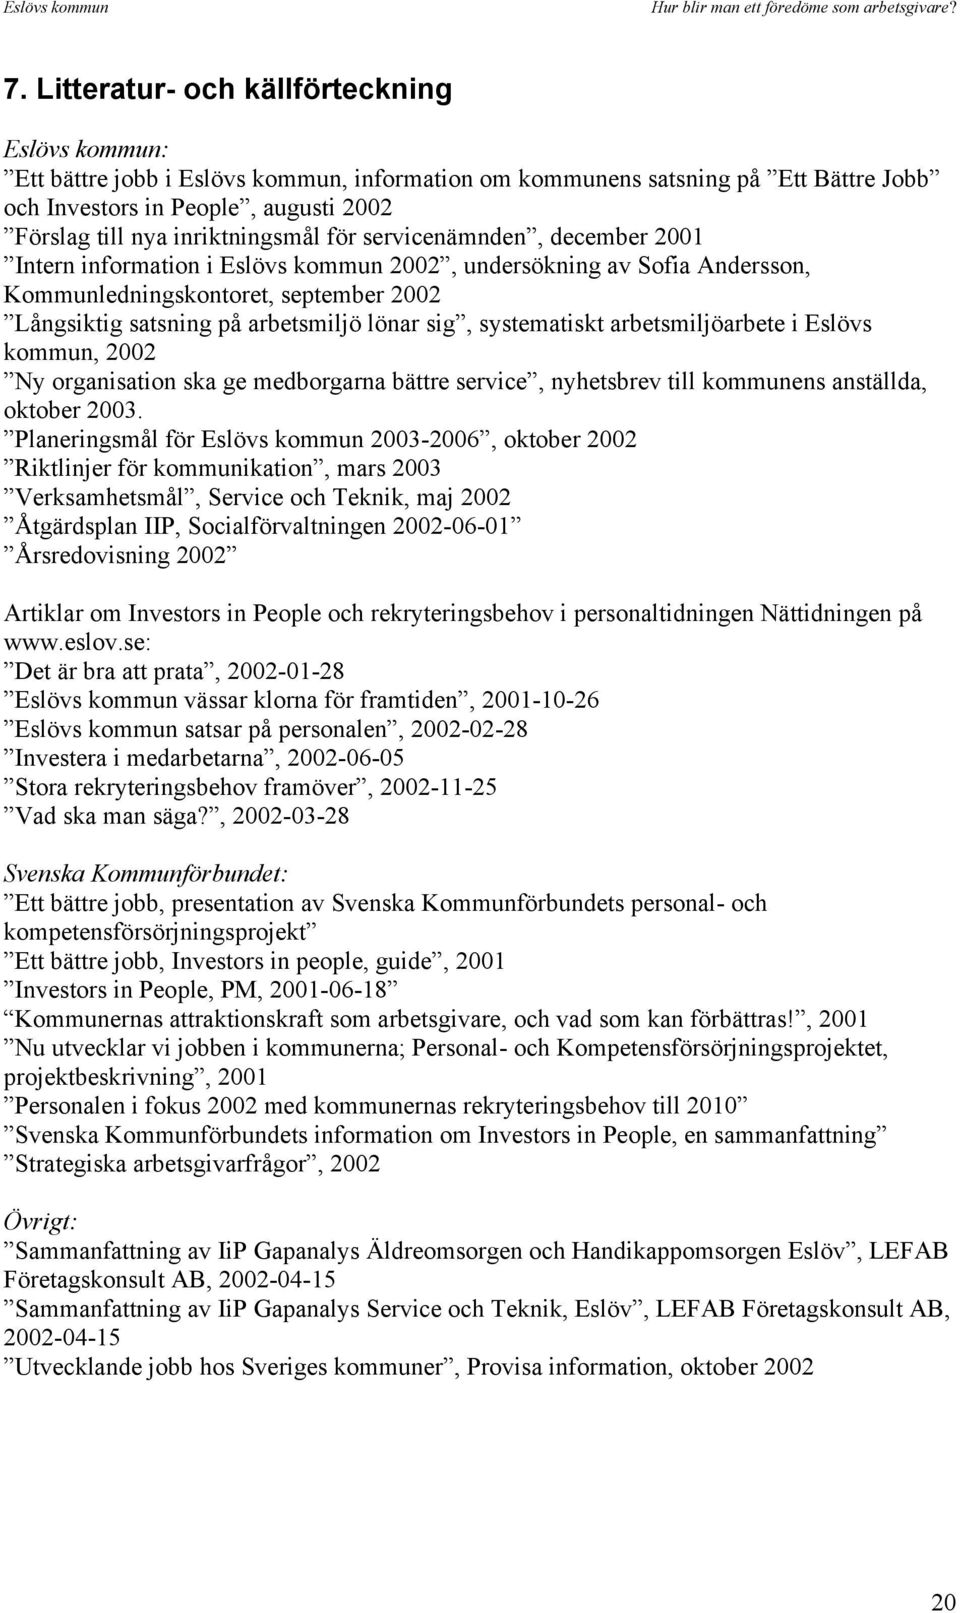 lönar sig, systematiskt arbetsmiljöarbete i Eslövs kommun, 2002 Ny organisation ska ge medborgarna bättre service, nyhetsbrev till kommunens anställda, oktober 2003.